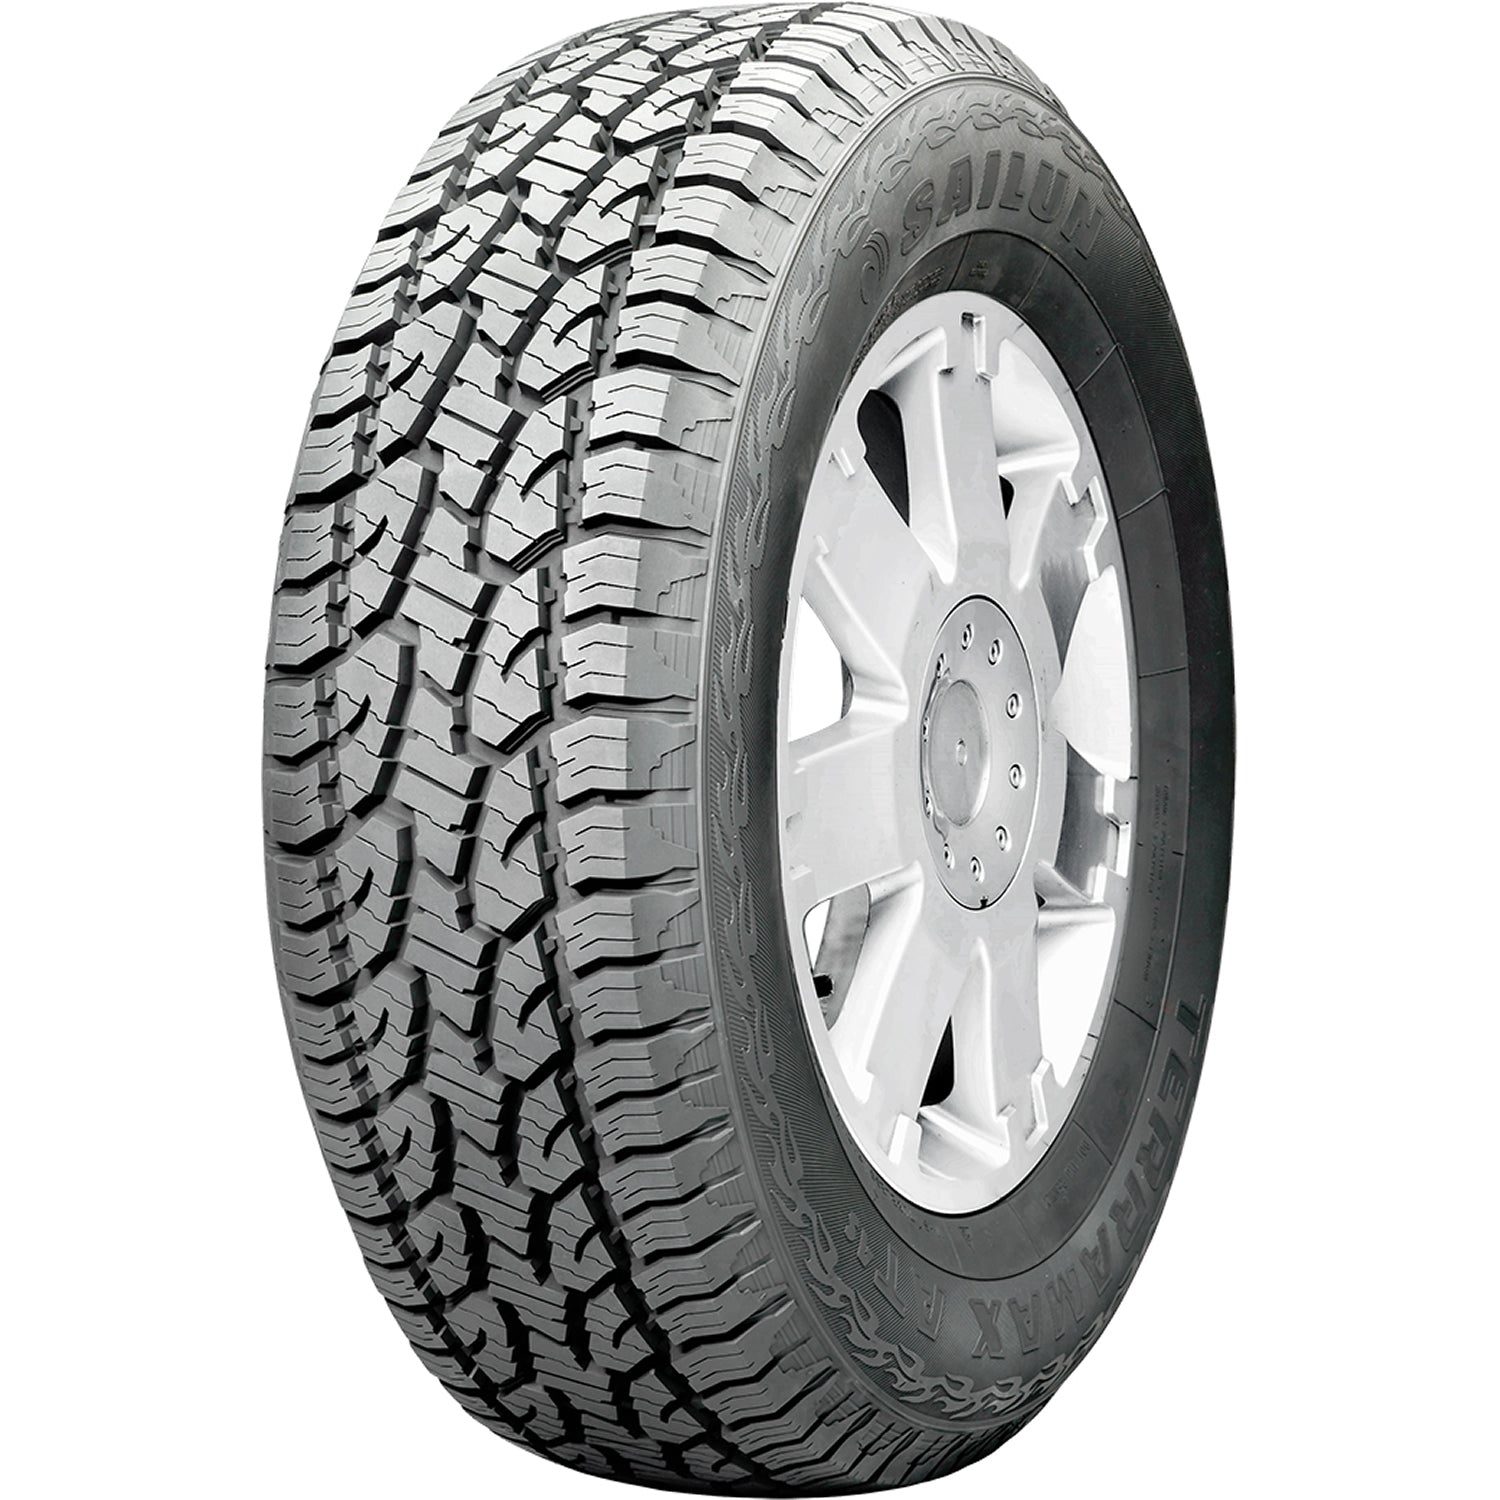 SAILUN TERRAMAX AT 4S 265/70R16 (30.6X10.7R 16) Tires